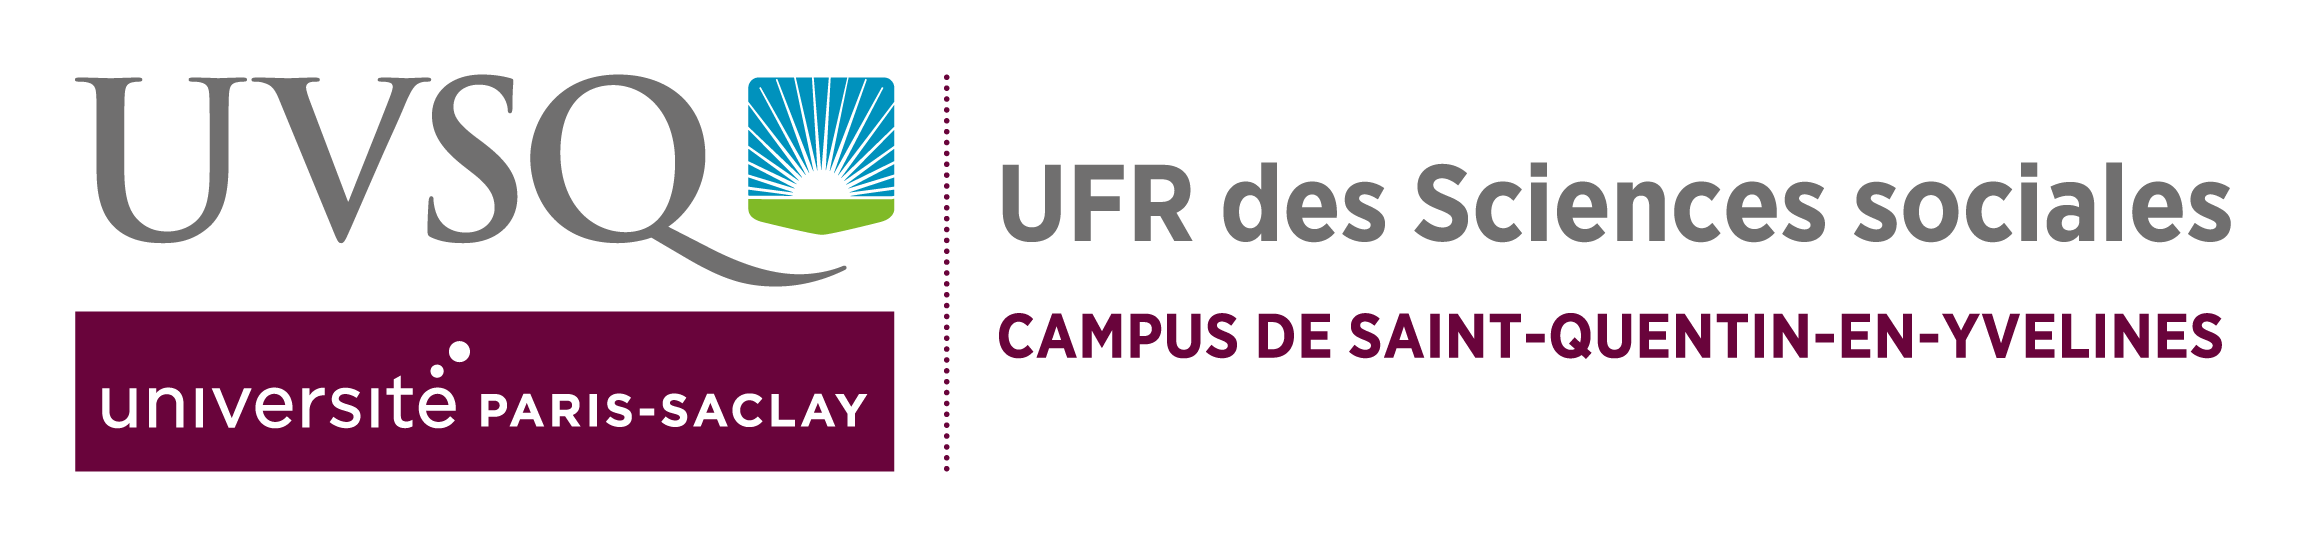 logo-UFR des sciences sociales